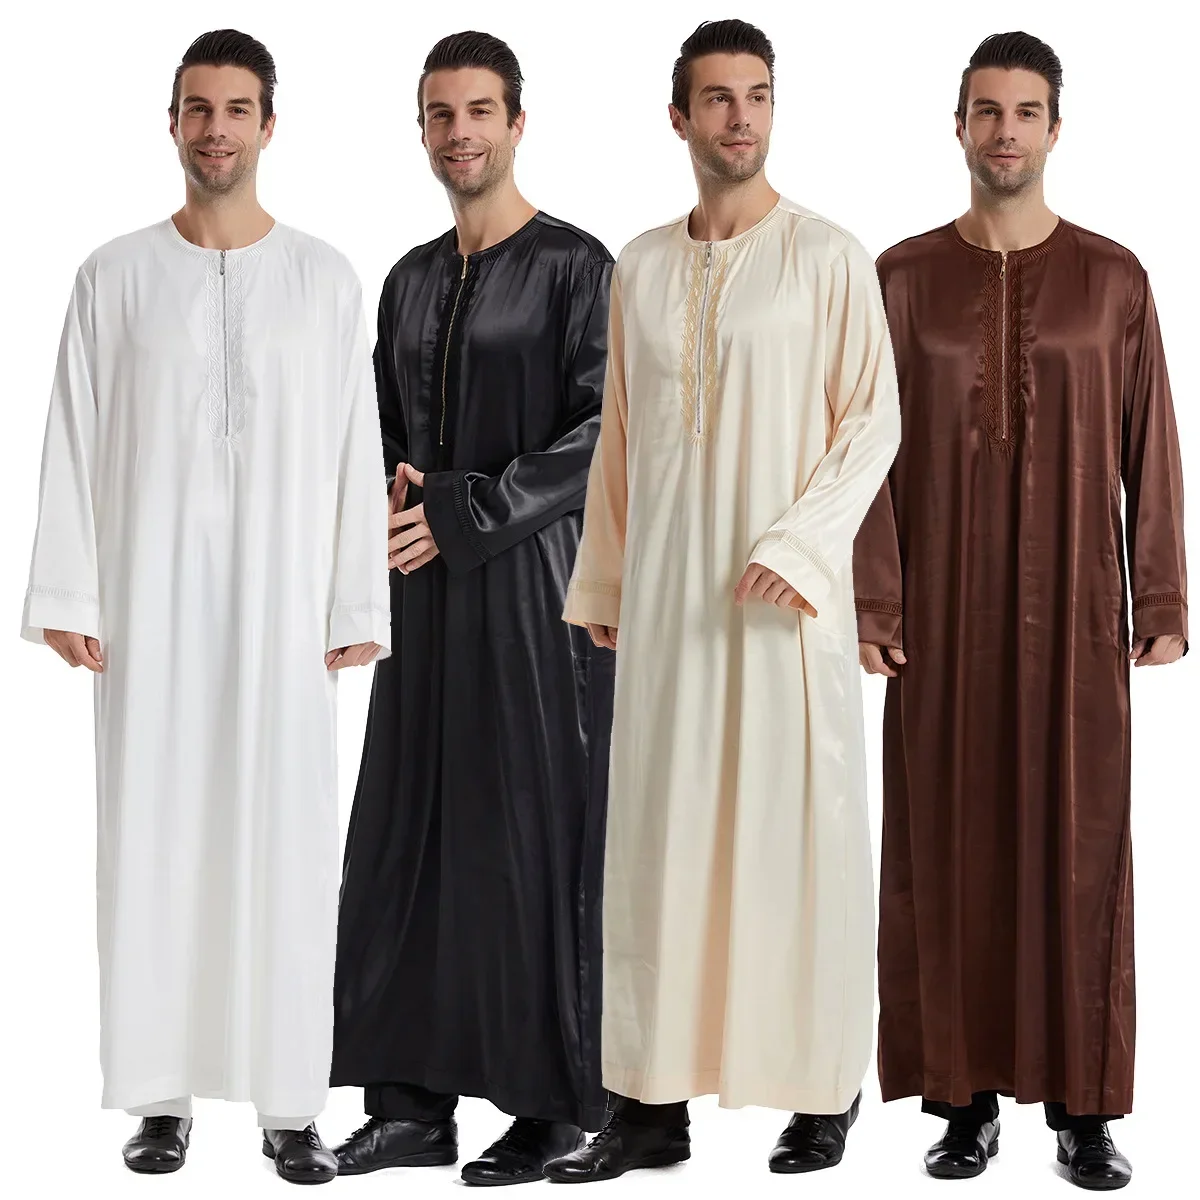 Рамадан, джубба, табос, кафтан, абайя, Дубай, арабское мусульманское платье, мужские юббы, мусульманские Абайи для молитвенной одежды, мужская одежда рамадан кафтан abaya дубай турция мусульманское арабское длинное платье abaya s для женщин caftan robe longue long femme djellaba